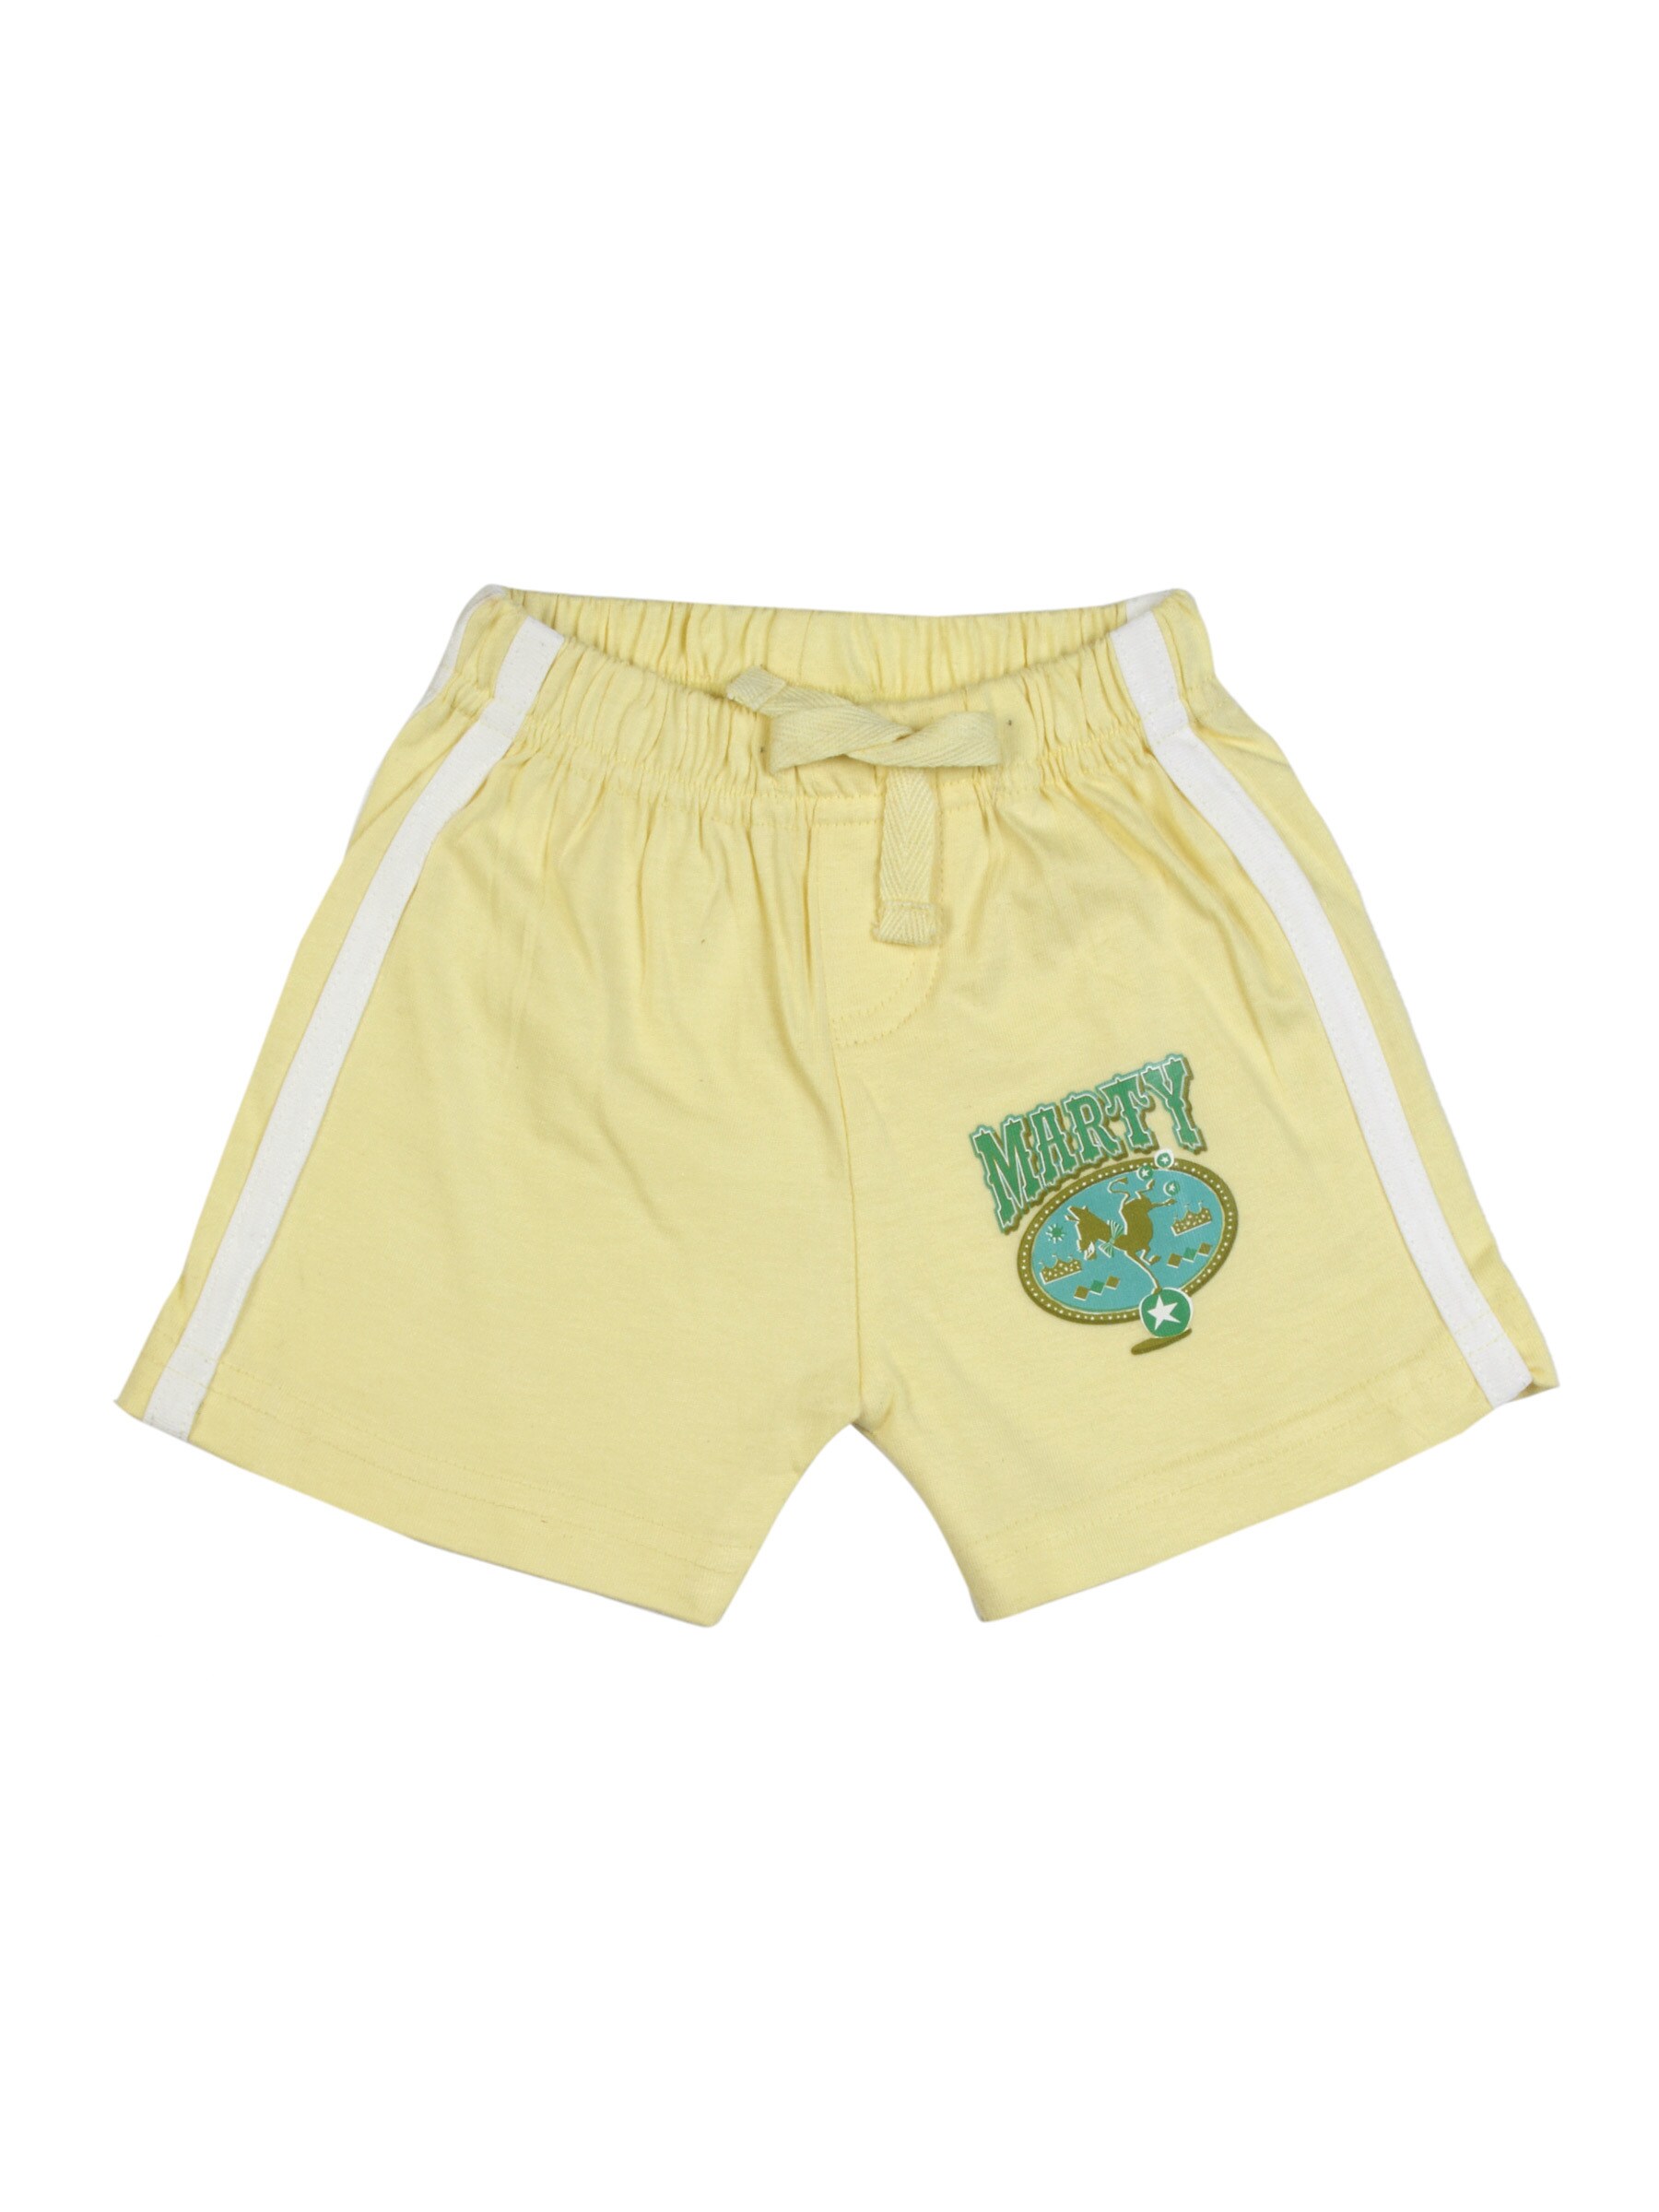 Madagascar3 Infant Boys Lemon Yellow Shorts